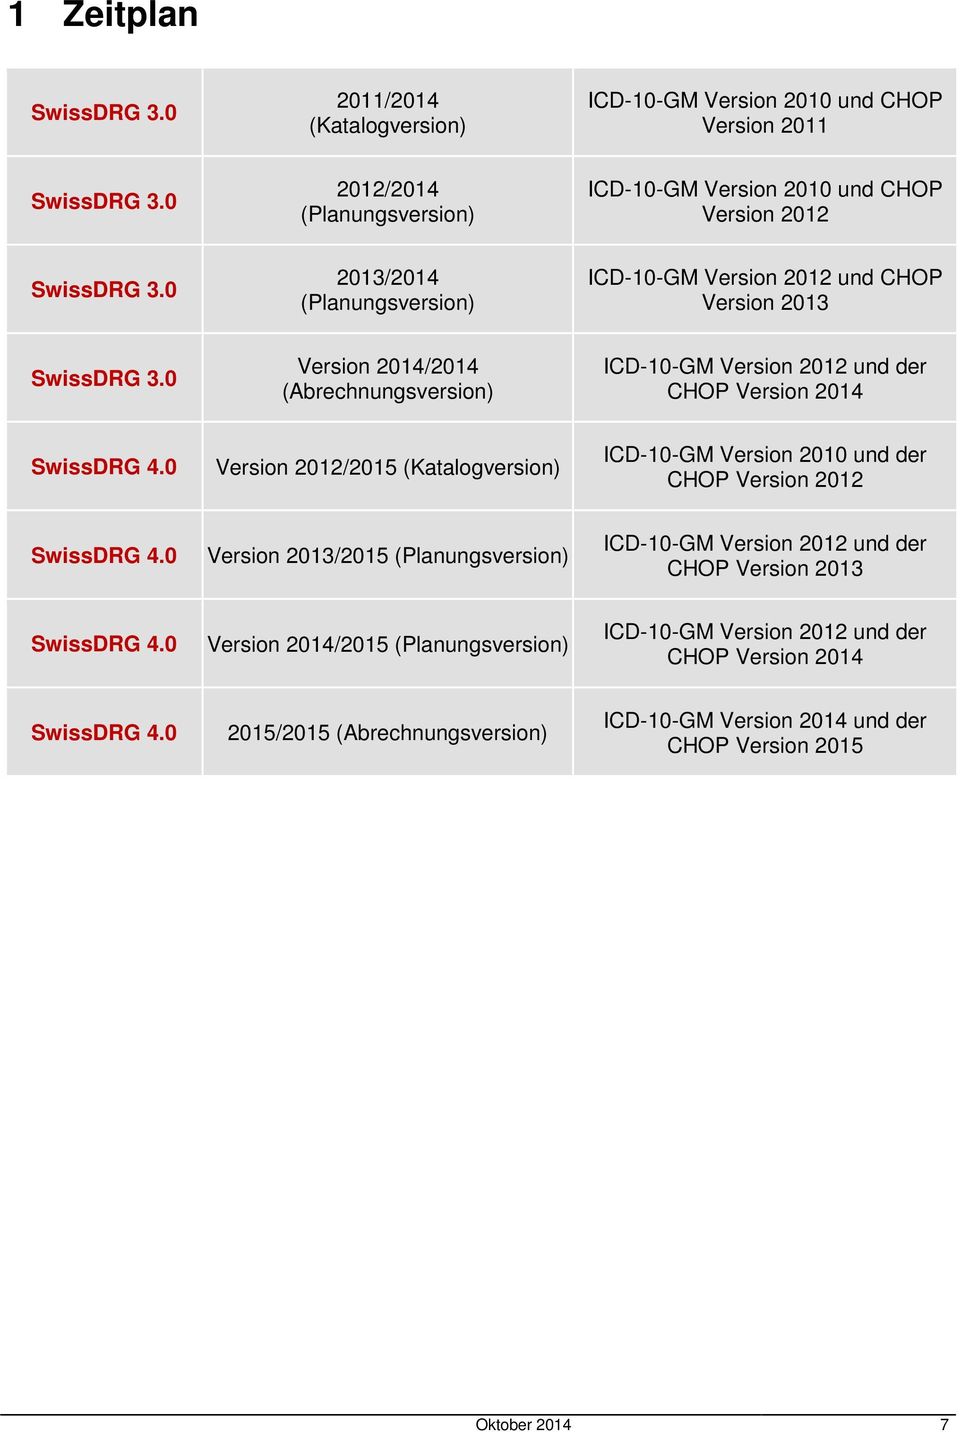 0 Version 2012/2015 (Katalogversion) ICD-10-GM Version 2010 und der CHOP Version 2012 SwissDRG 4.